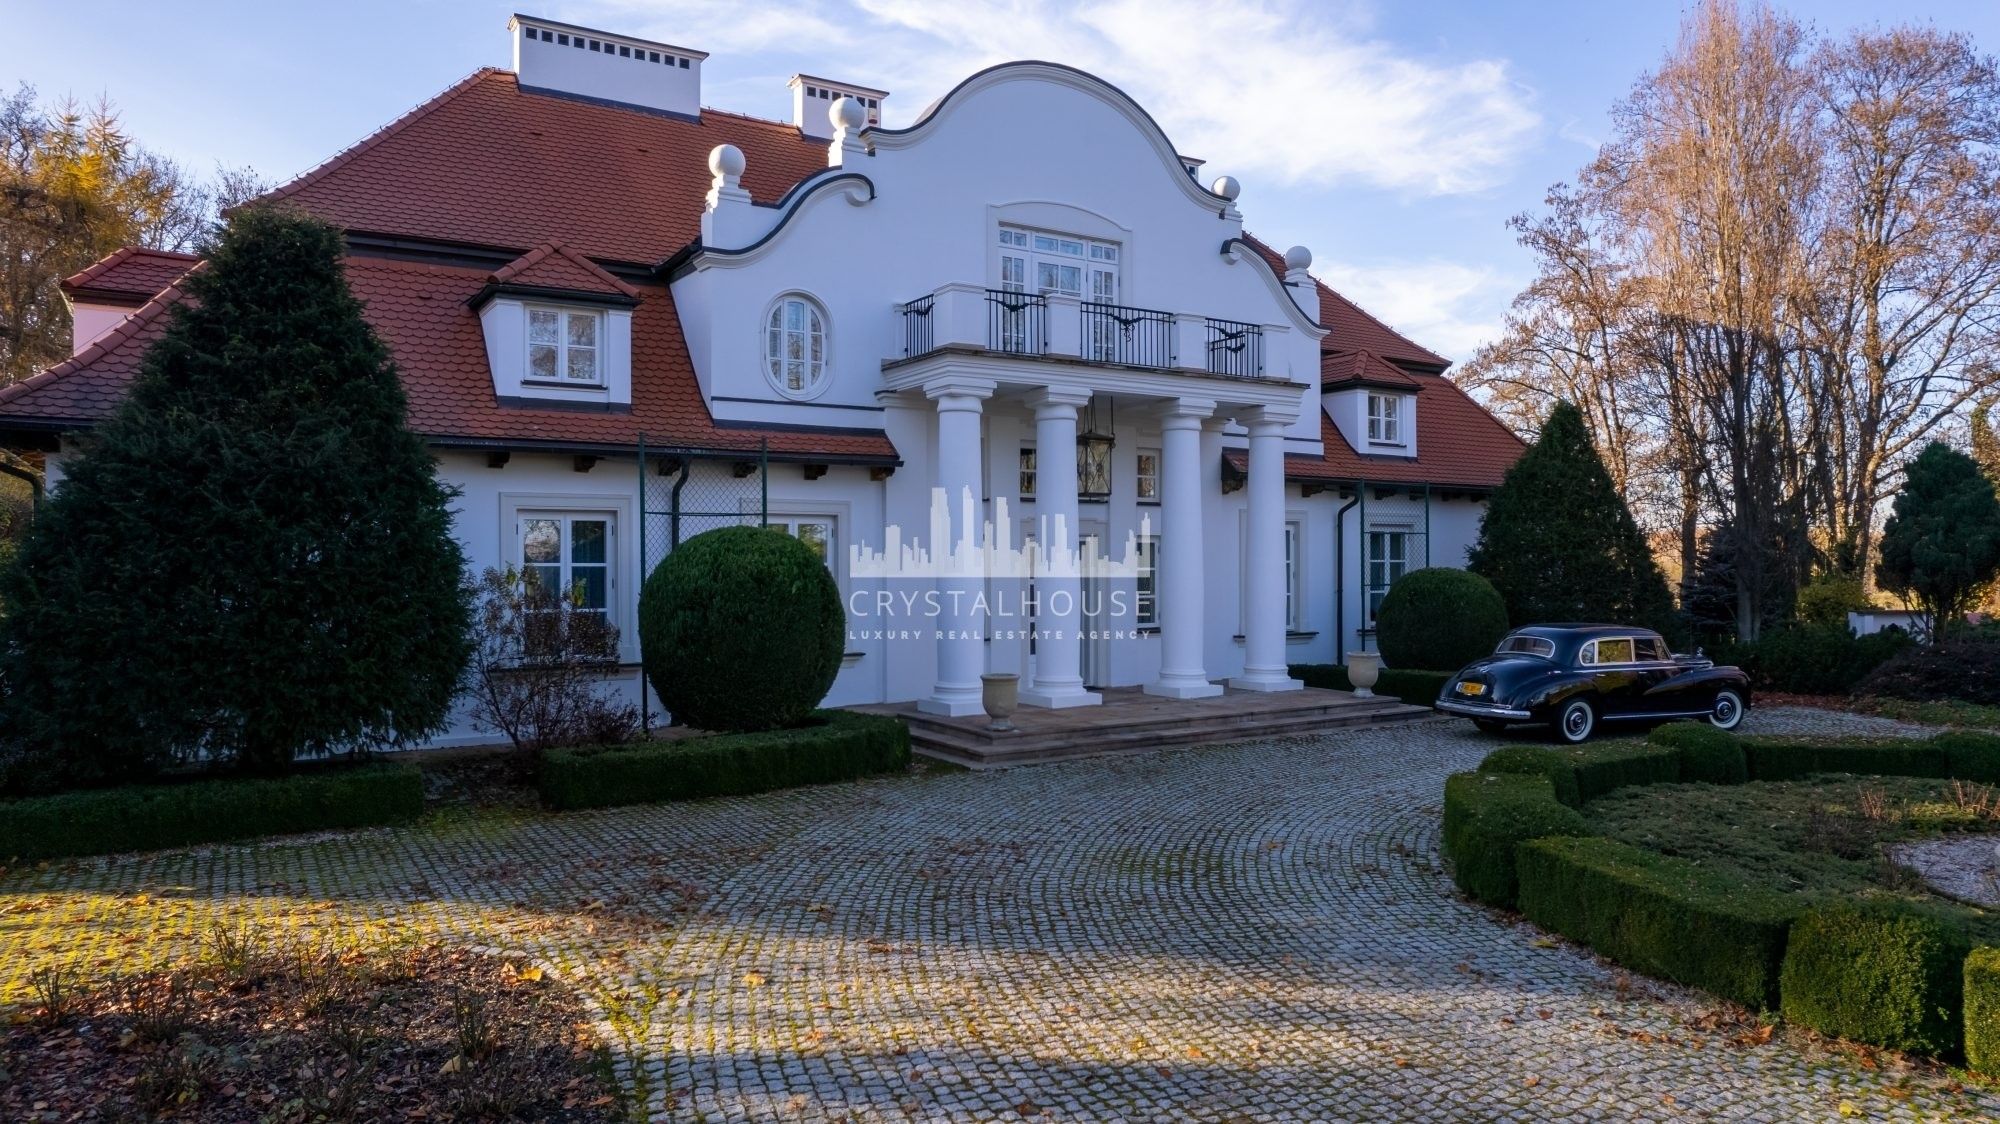 Fotos Gutshof mit Herrenhaus und Gestüt, Woiwodschaft Lodz